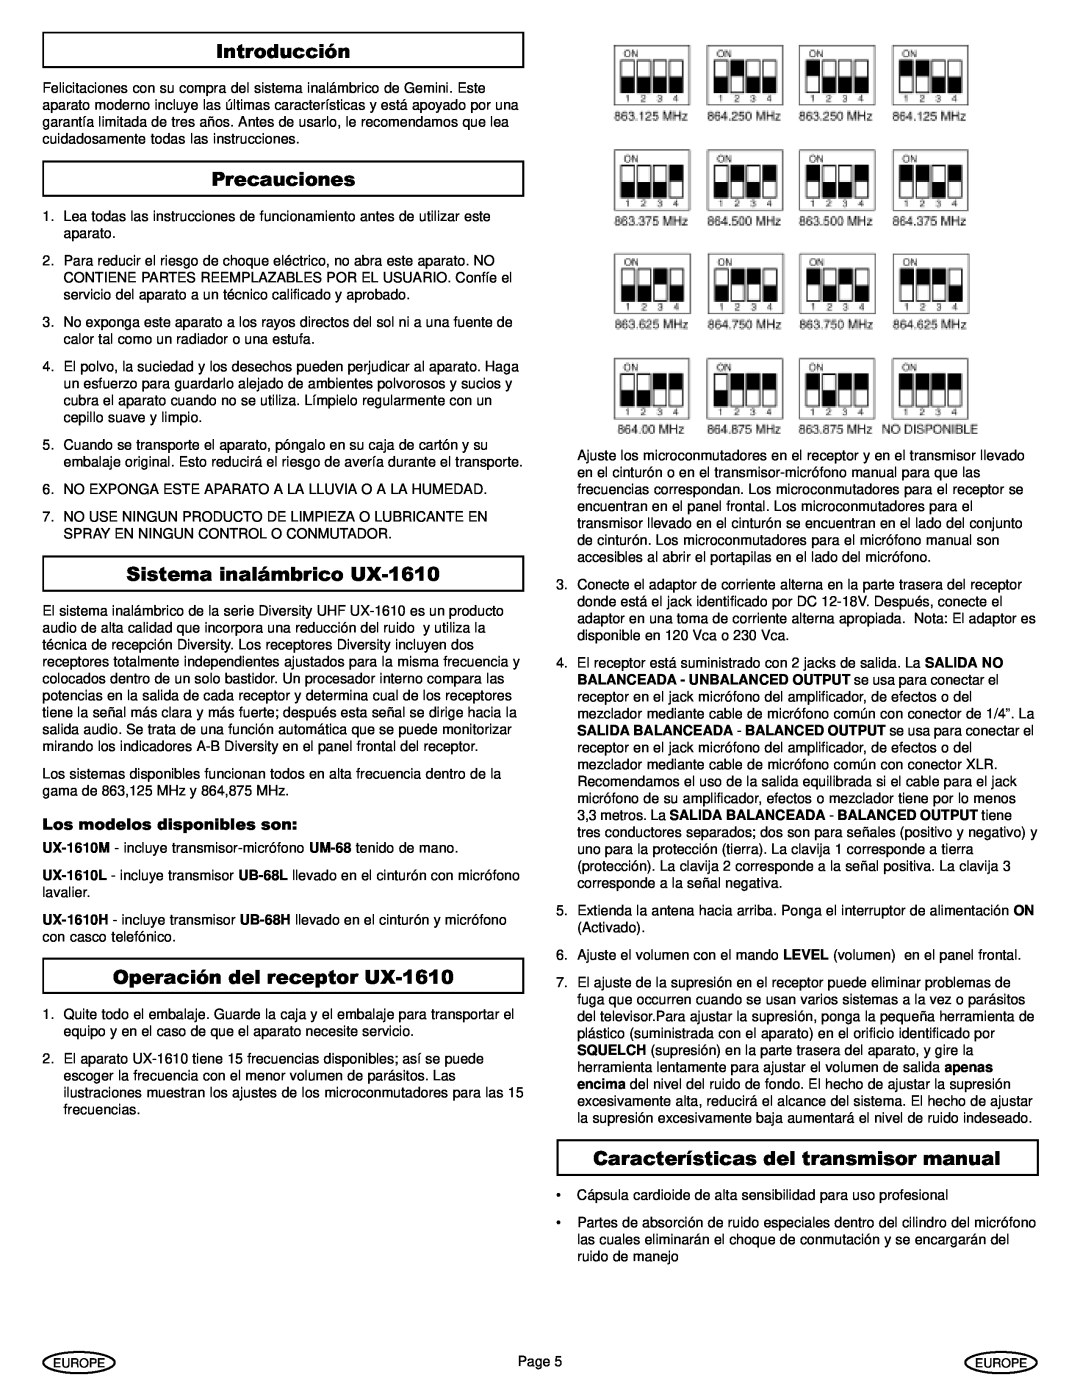 Gemini manual Introducción, Precauciones, Sistema inalámbrico UX-1610, Operación del receptor UX-1610 